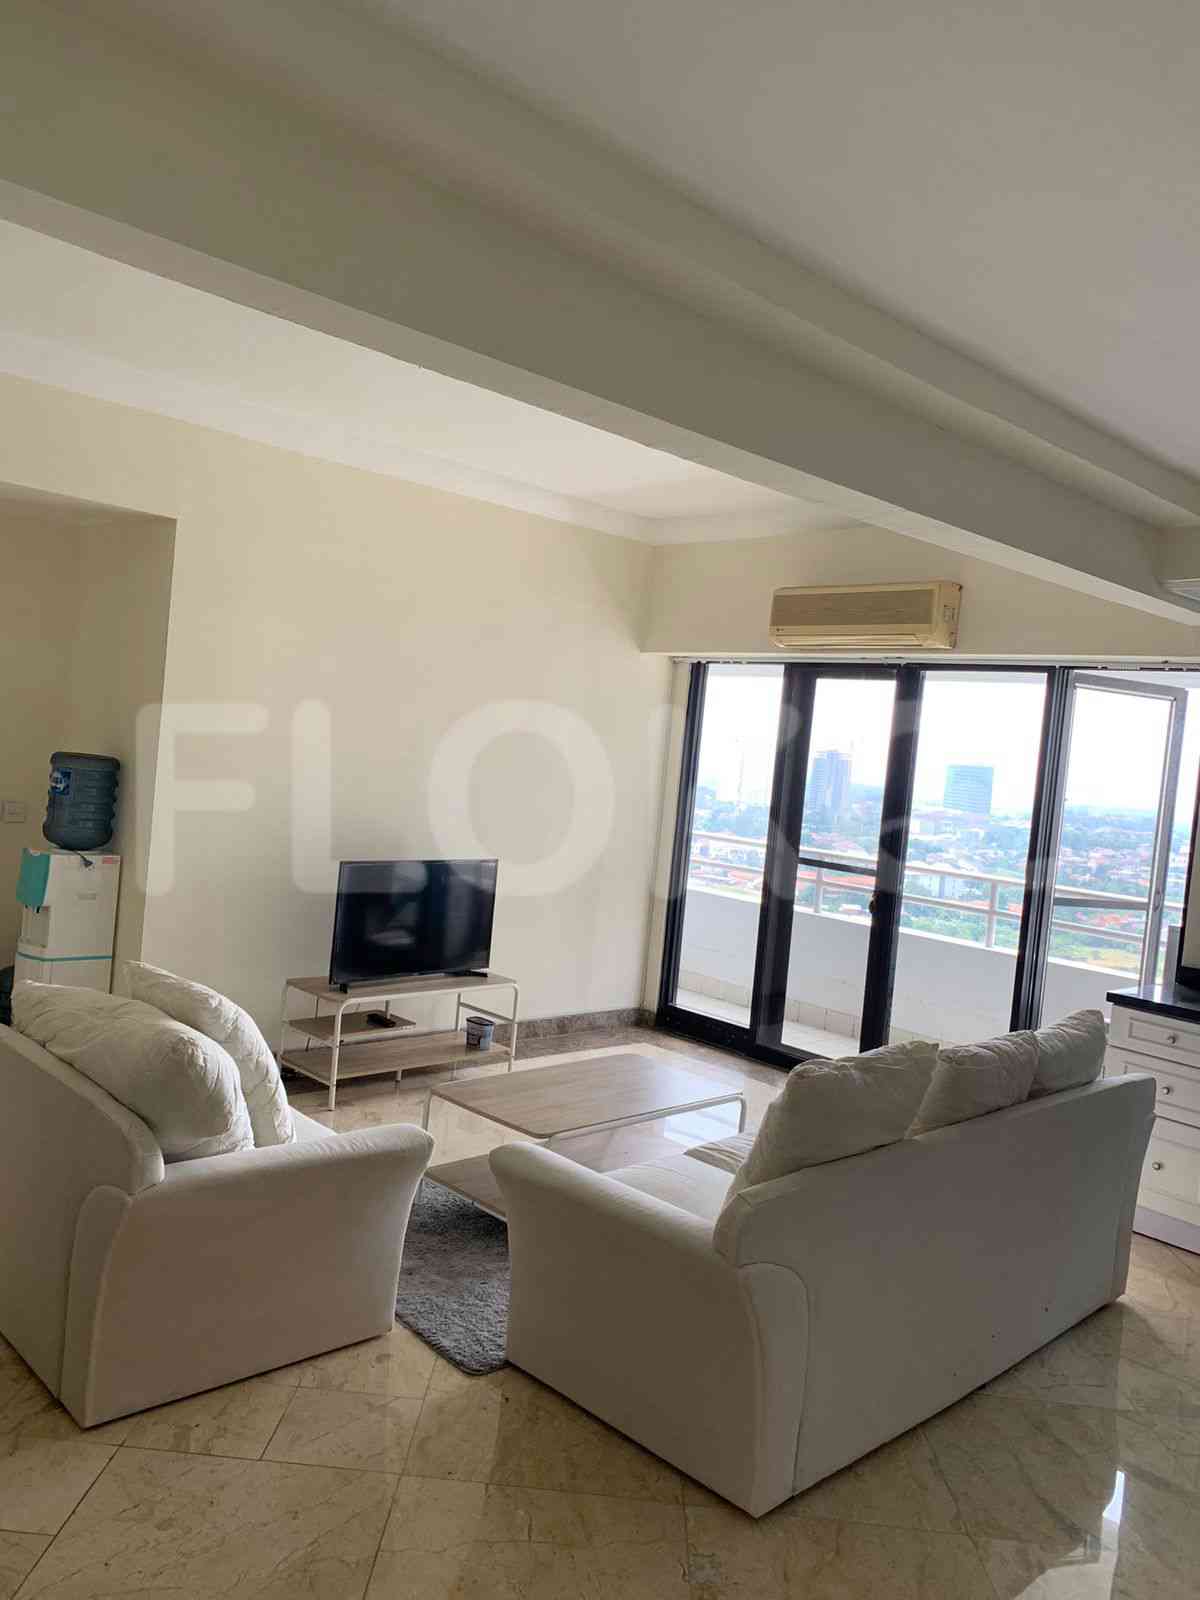 2 Bedroom on 23rd Floor for Rent in BonaVista Apartment - fle8f4 4